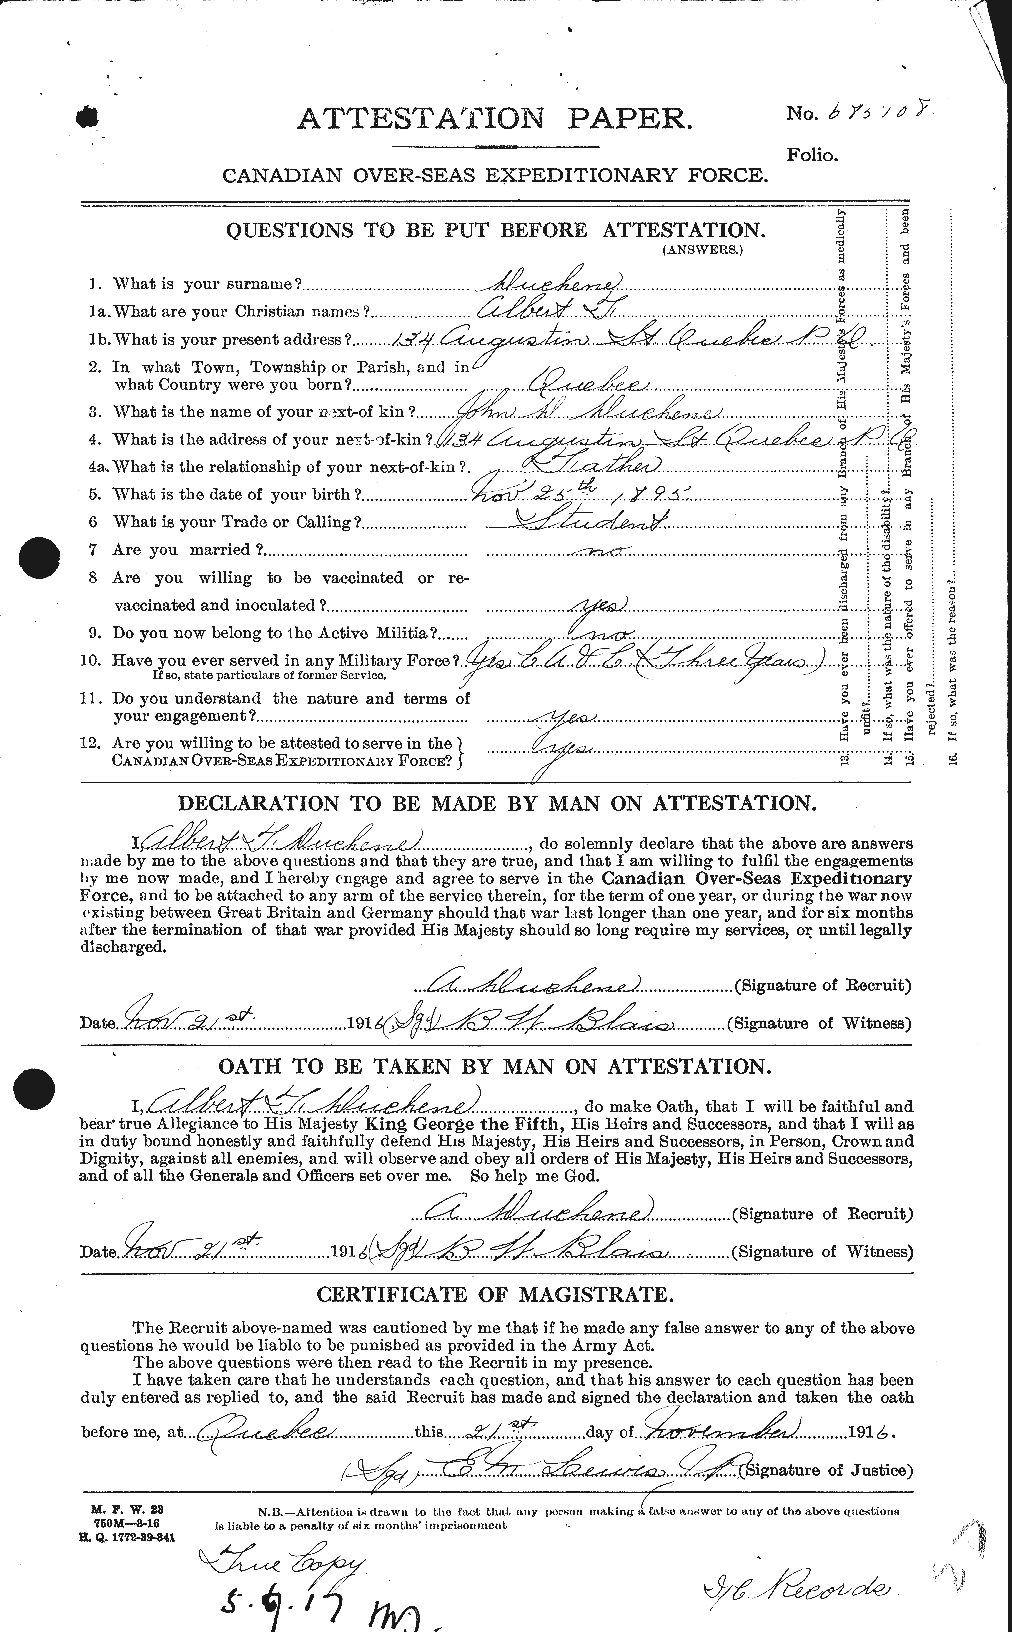 Dossiers du Personnel de la Première Guerre mondiale - CEC 302358a